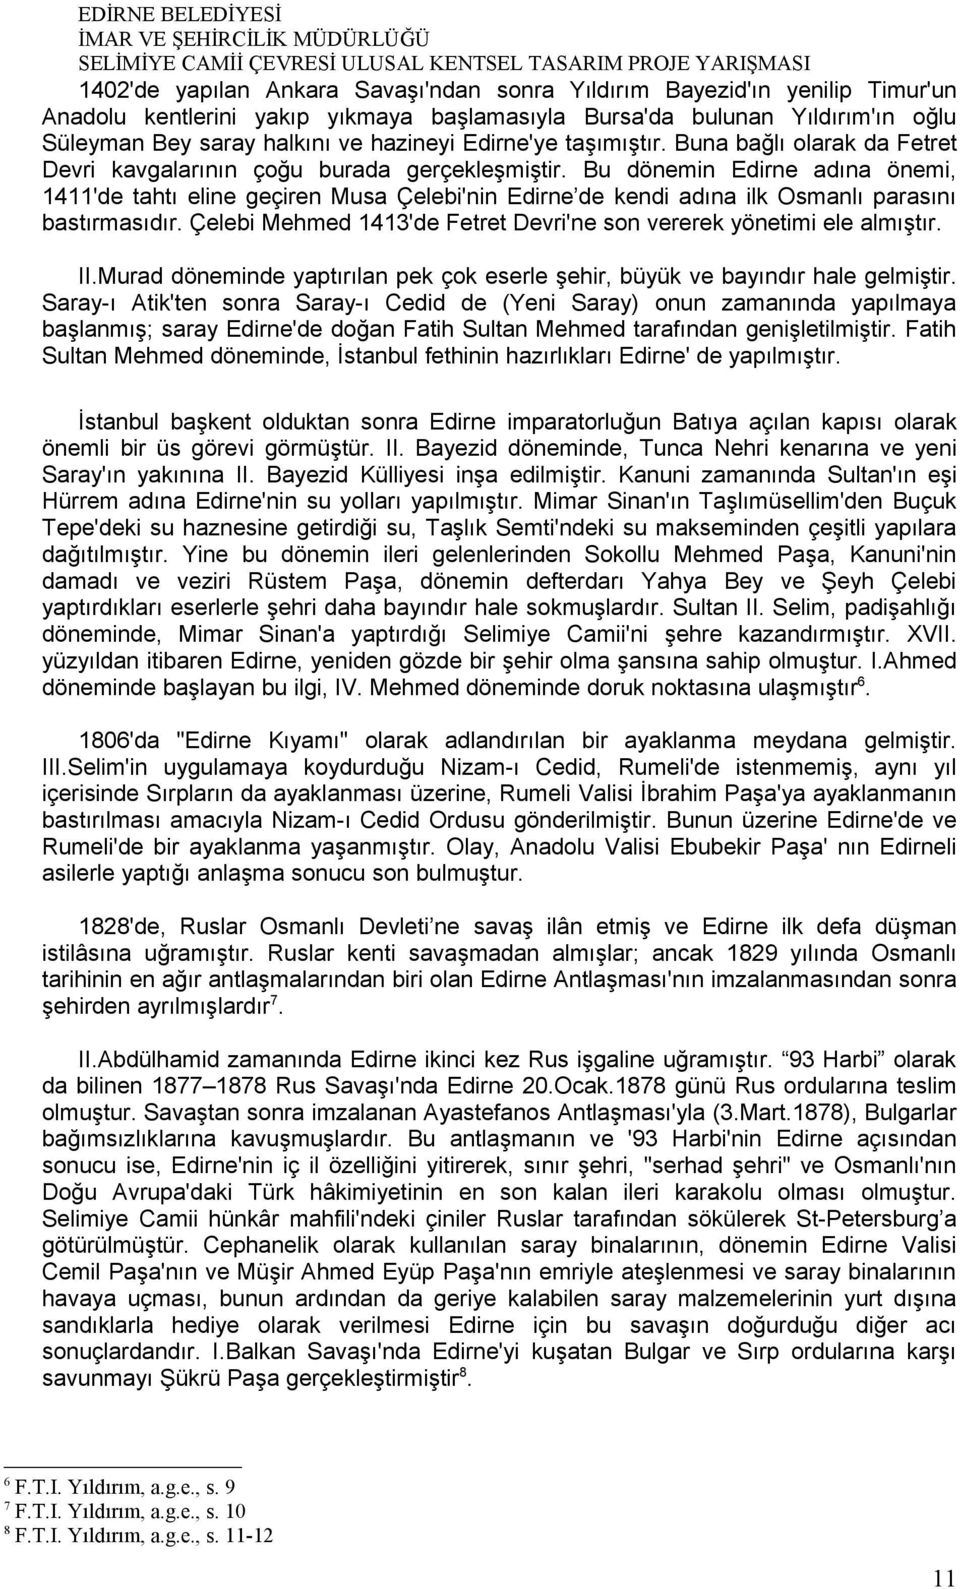 Bu dönemin Edirne adına önemi, 1411'de tahtı eline geçiren Musa Çelebi'nin Edirne de kendi adına ilk Osmanlı parasını bastırmasıdır.